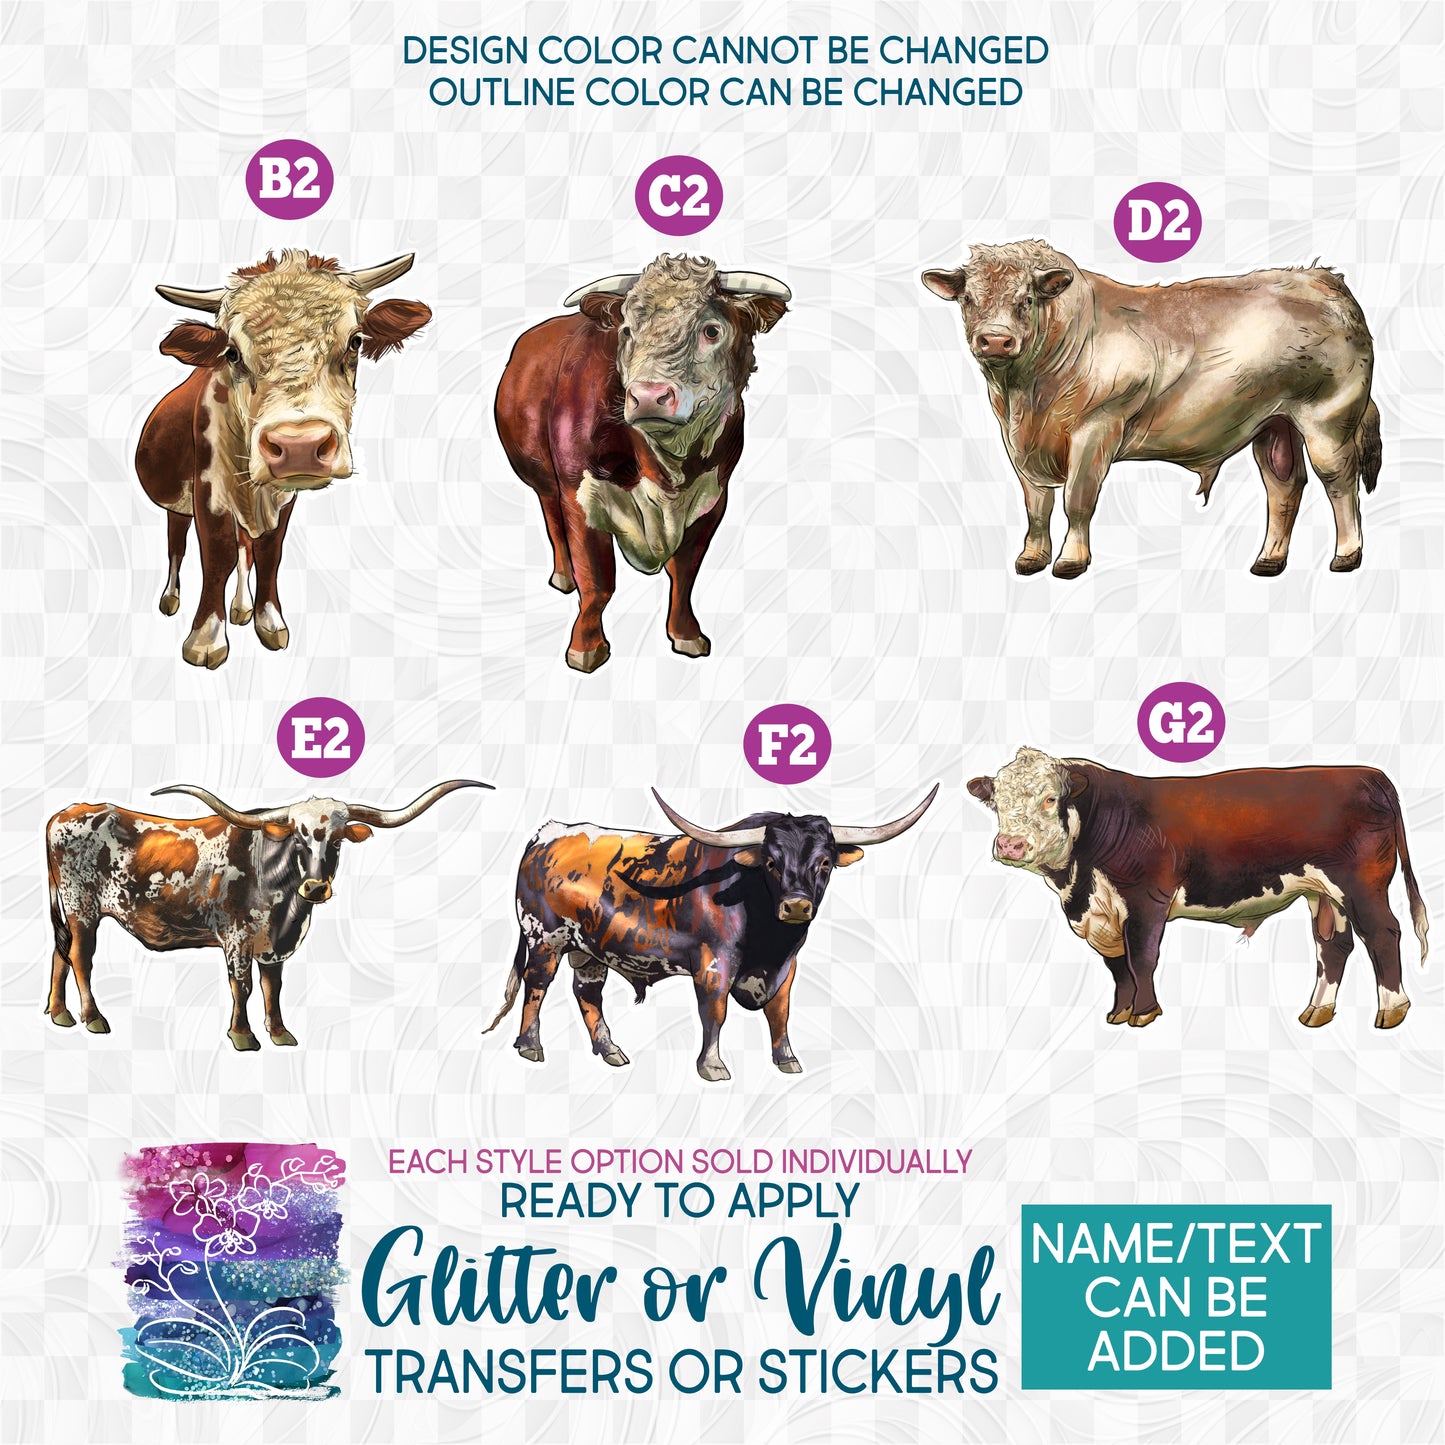 (s098-E) Cow Cows Calf Heifer Bull Cattle Glitter or Vinyl Iron-On Transfer or Sticker